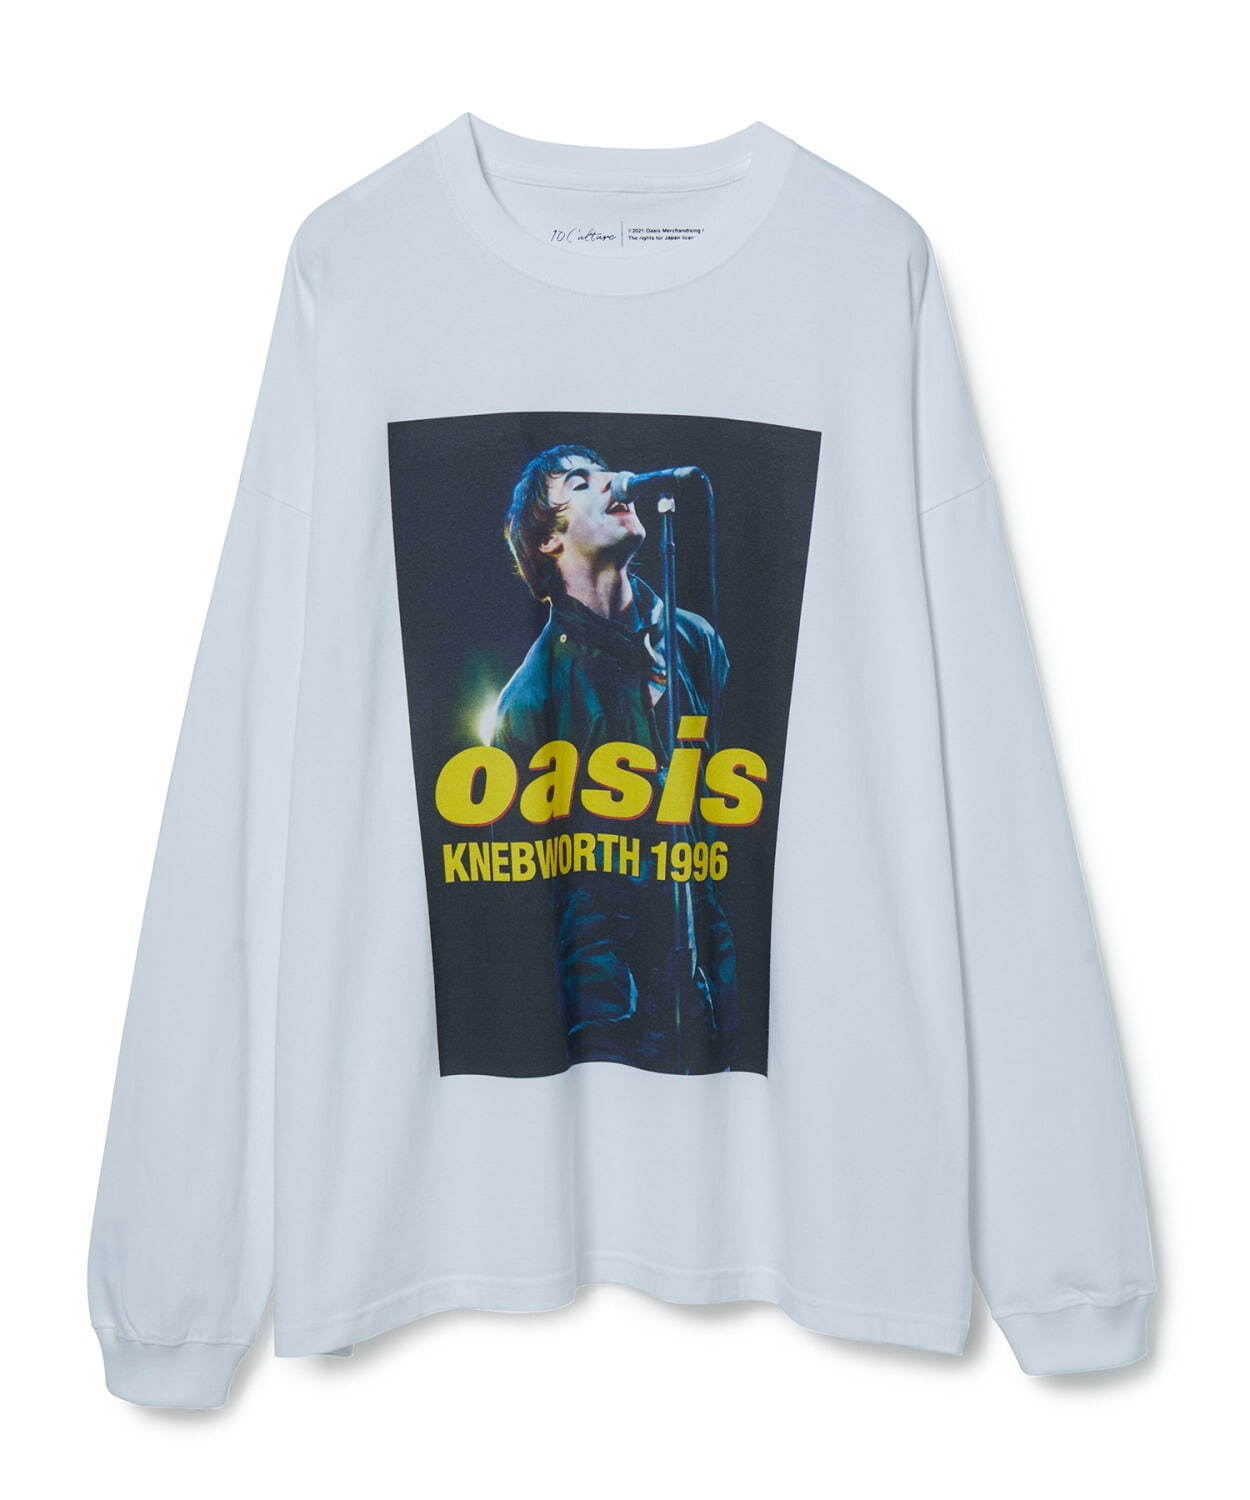 「Oasis×10C KNEBWORTH 1996 BIG L/S TEE」9,350円